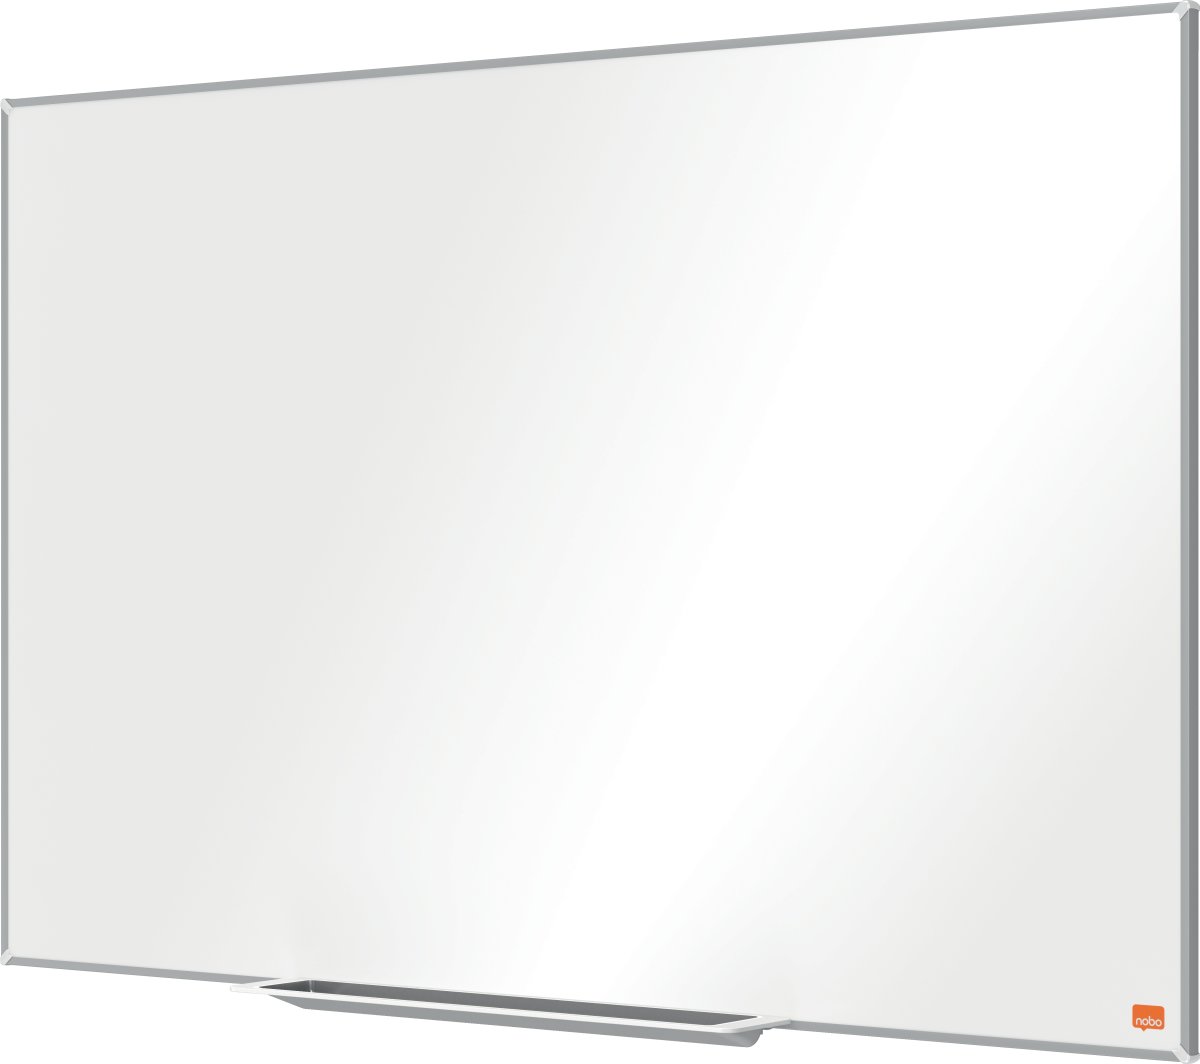 Whiteboard Nobo Prestige Emalj 61x92 cm